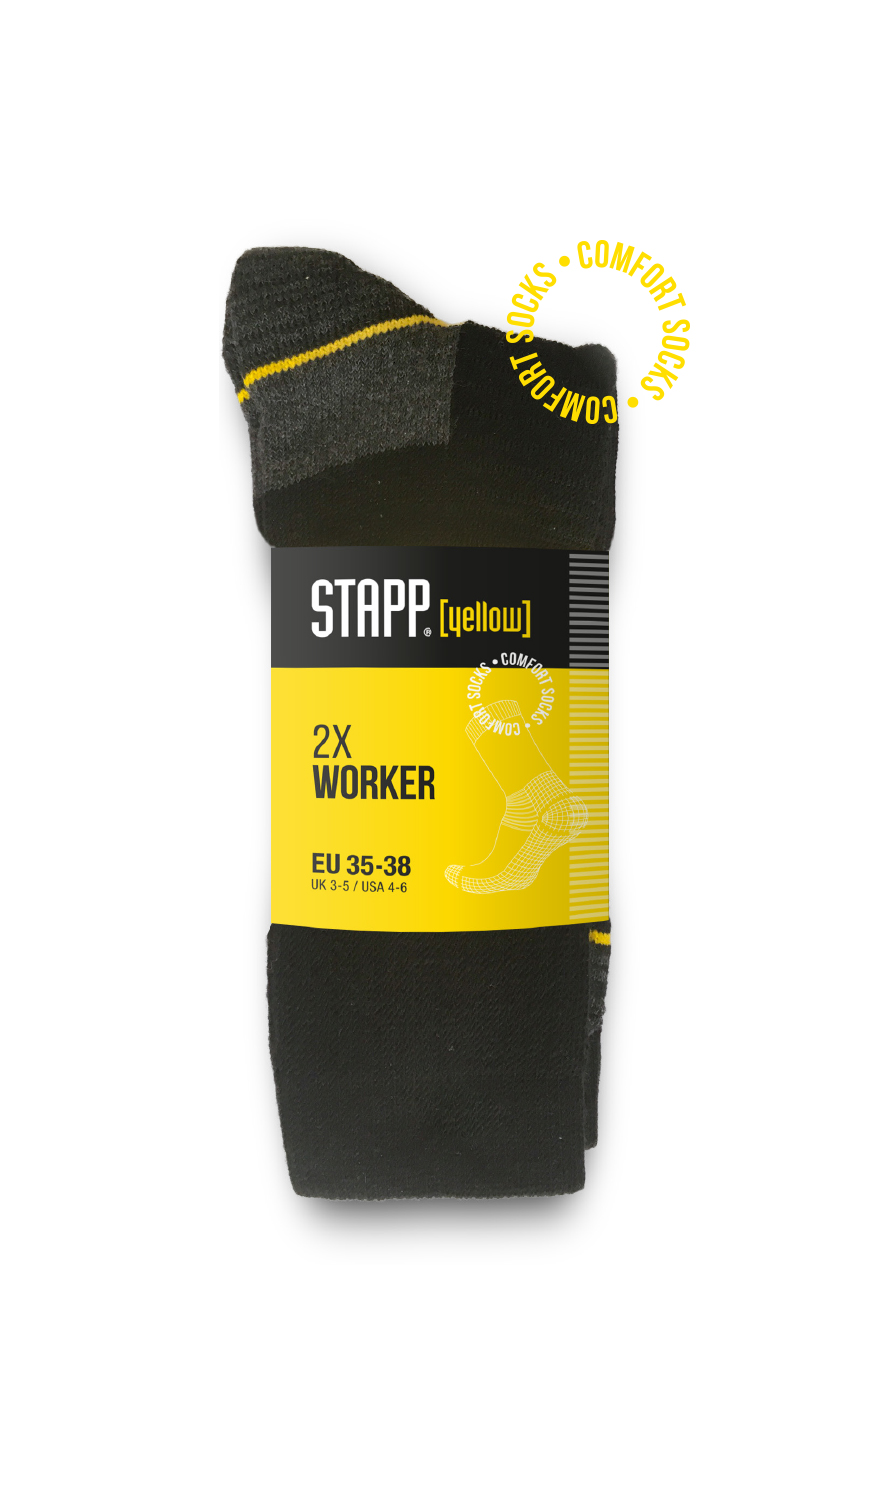 Keer terug salto auteur Stapp Yellow — Stapp socks